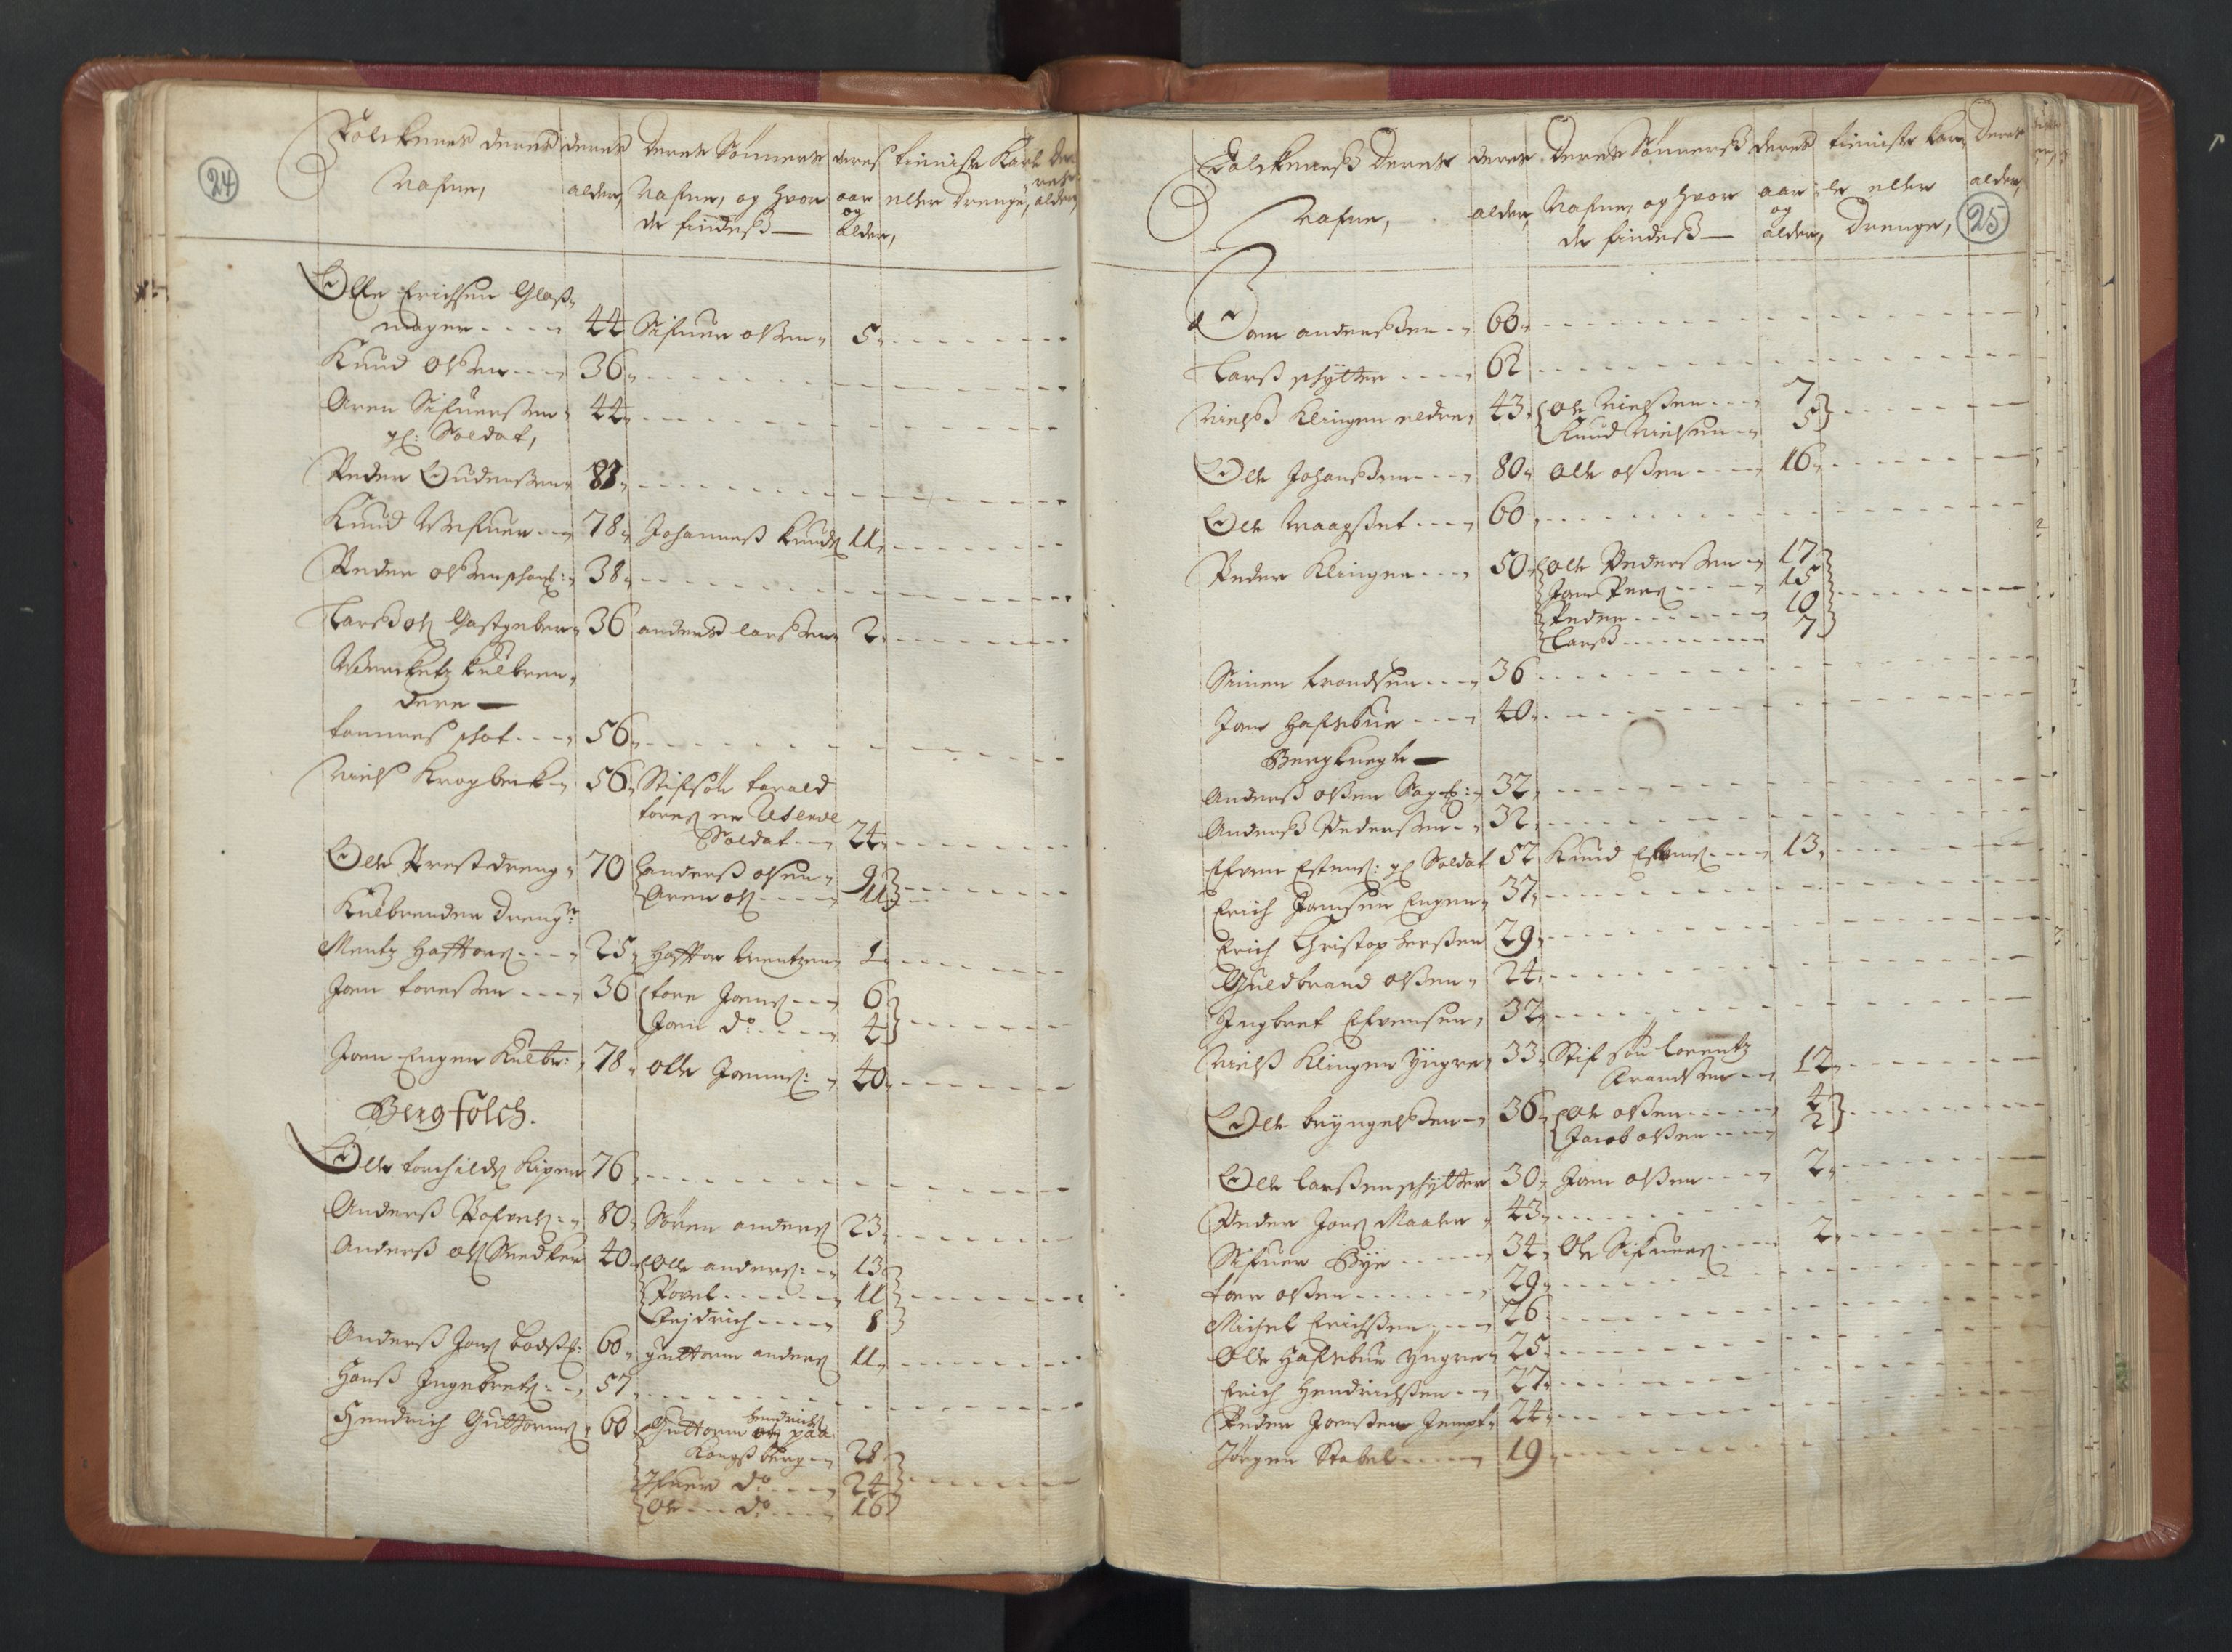 RA, Manntallet 1701, nr. 13: Orkdal fogderi og Gauldal fogderi med Røros kobberverk, 1701, s. 24-25